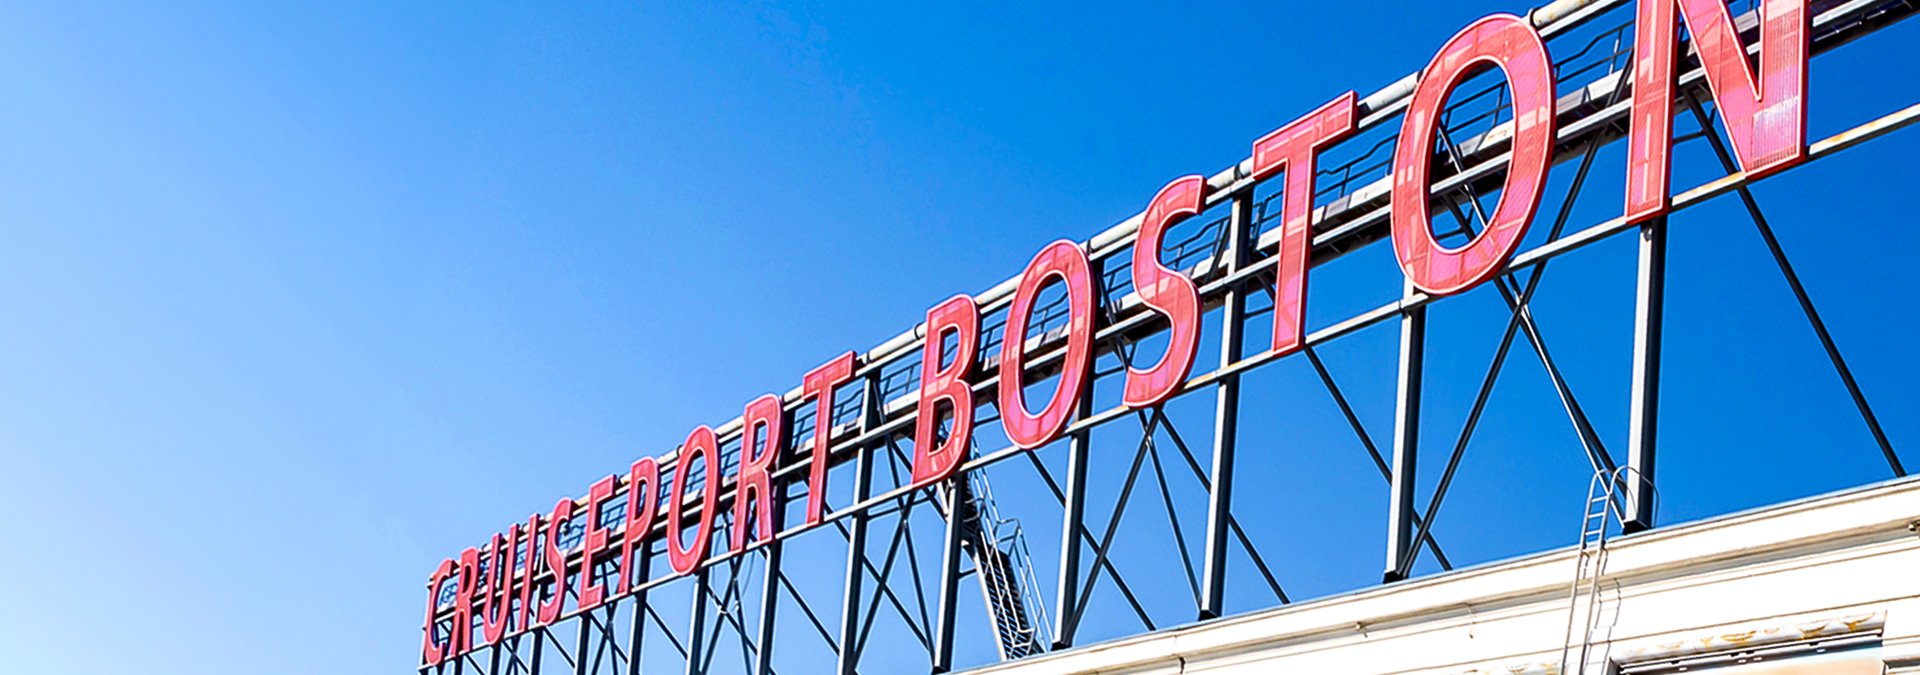 Cruiseport Boston sign